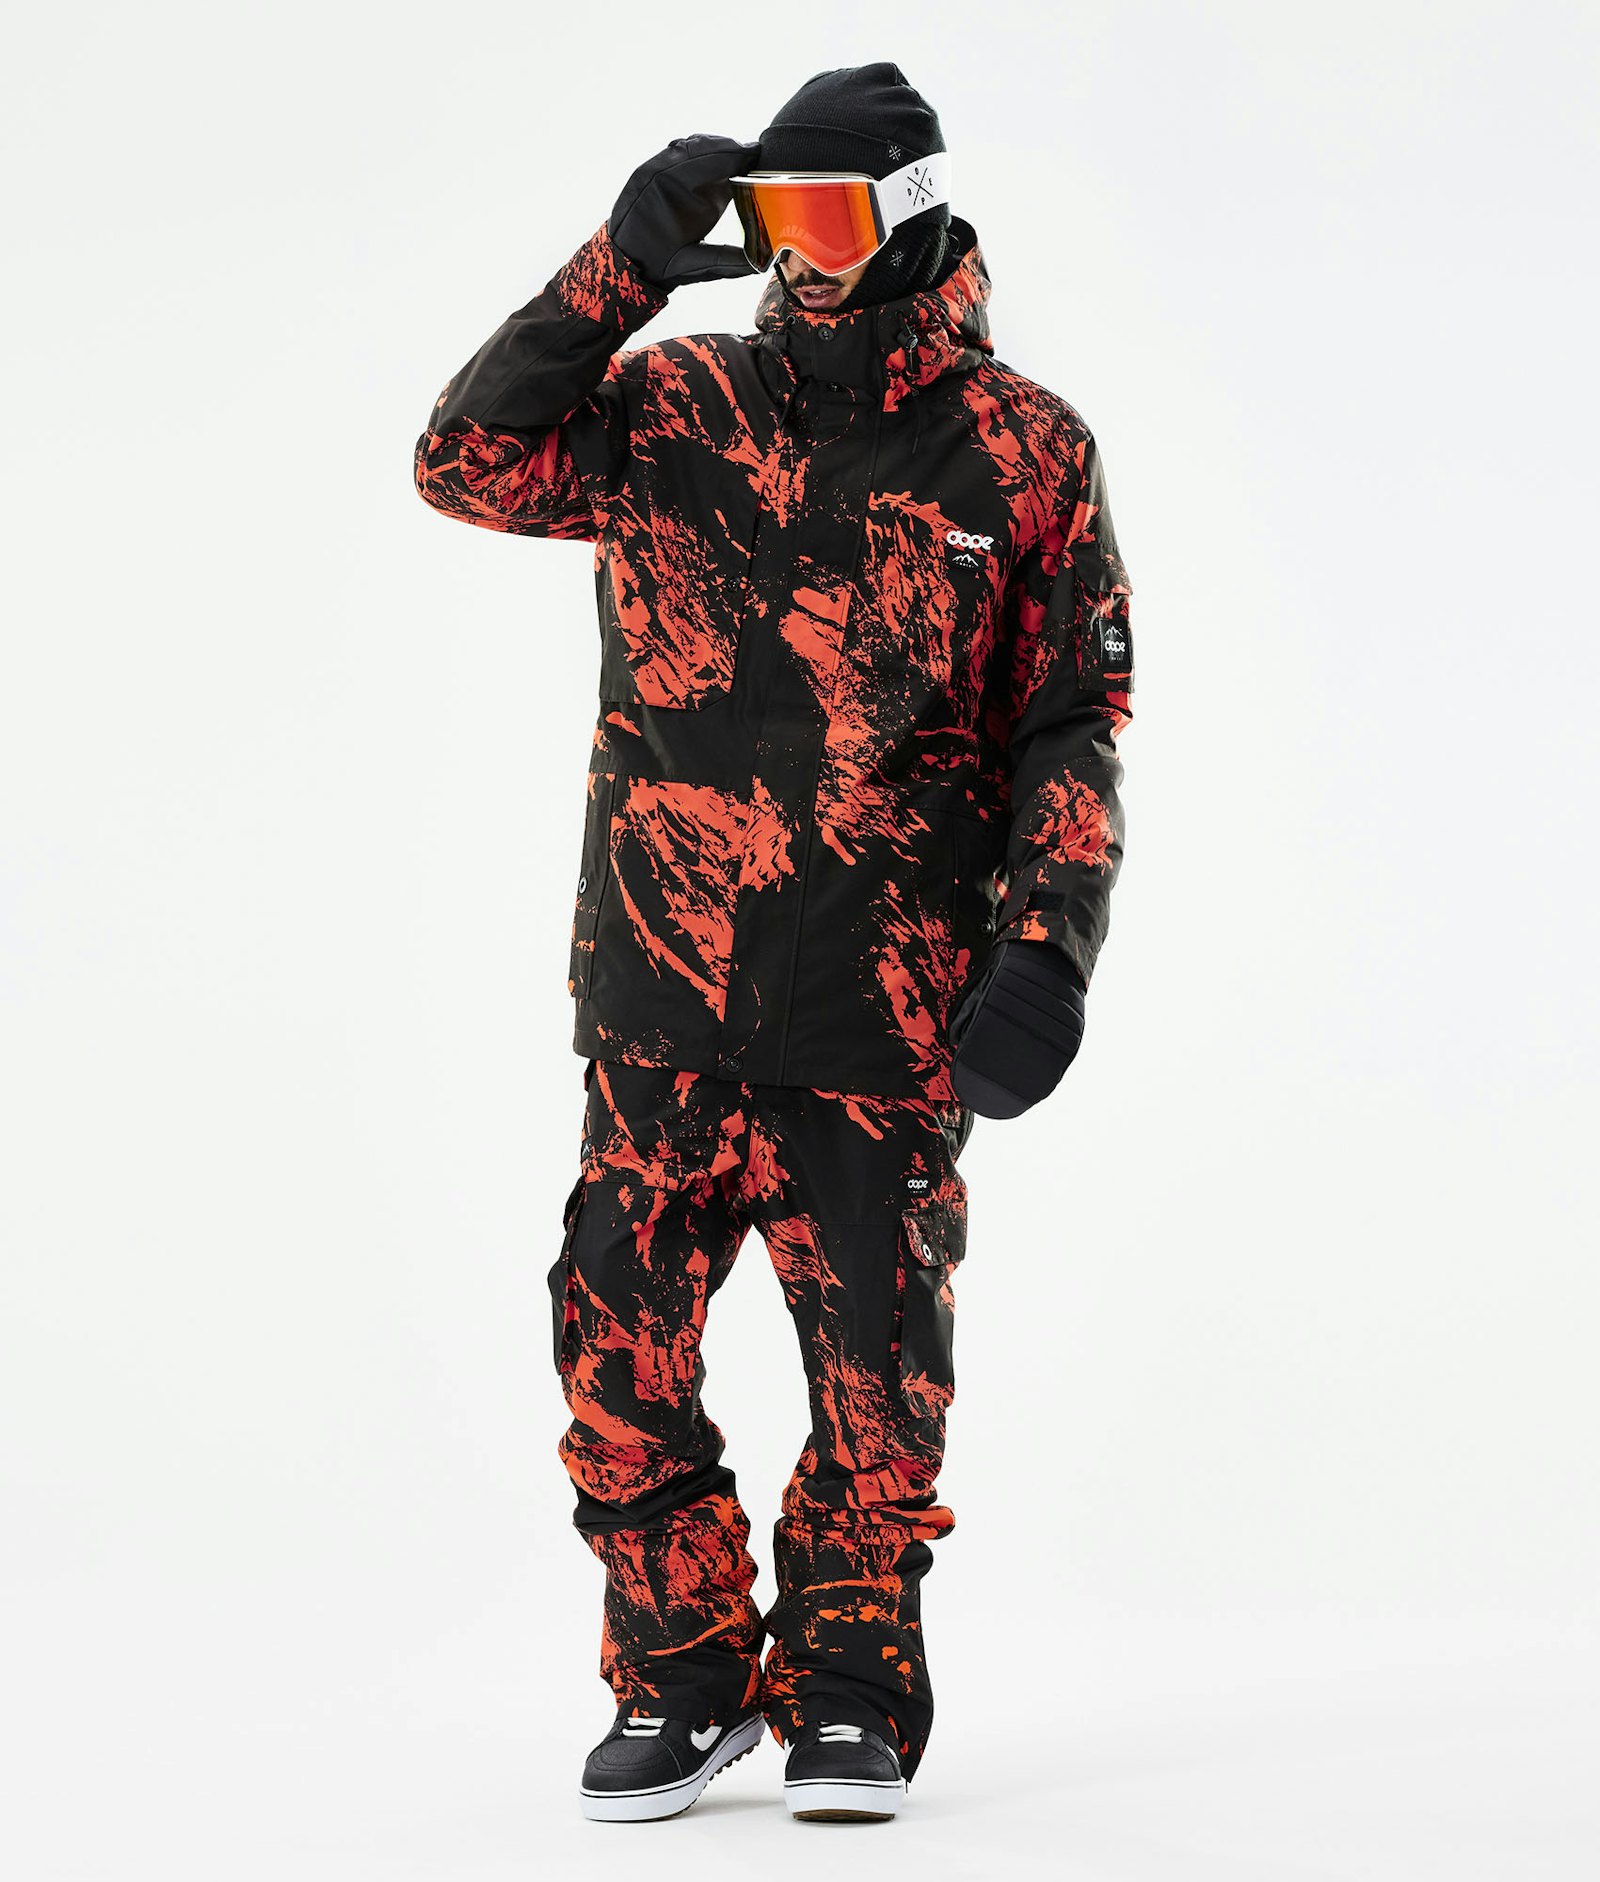 Adept 2021 Snowboard Jacket Men Paint Orange Renewed, Image 4 of 11